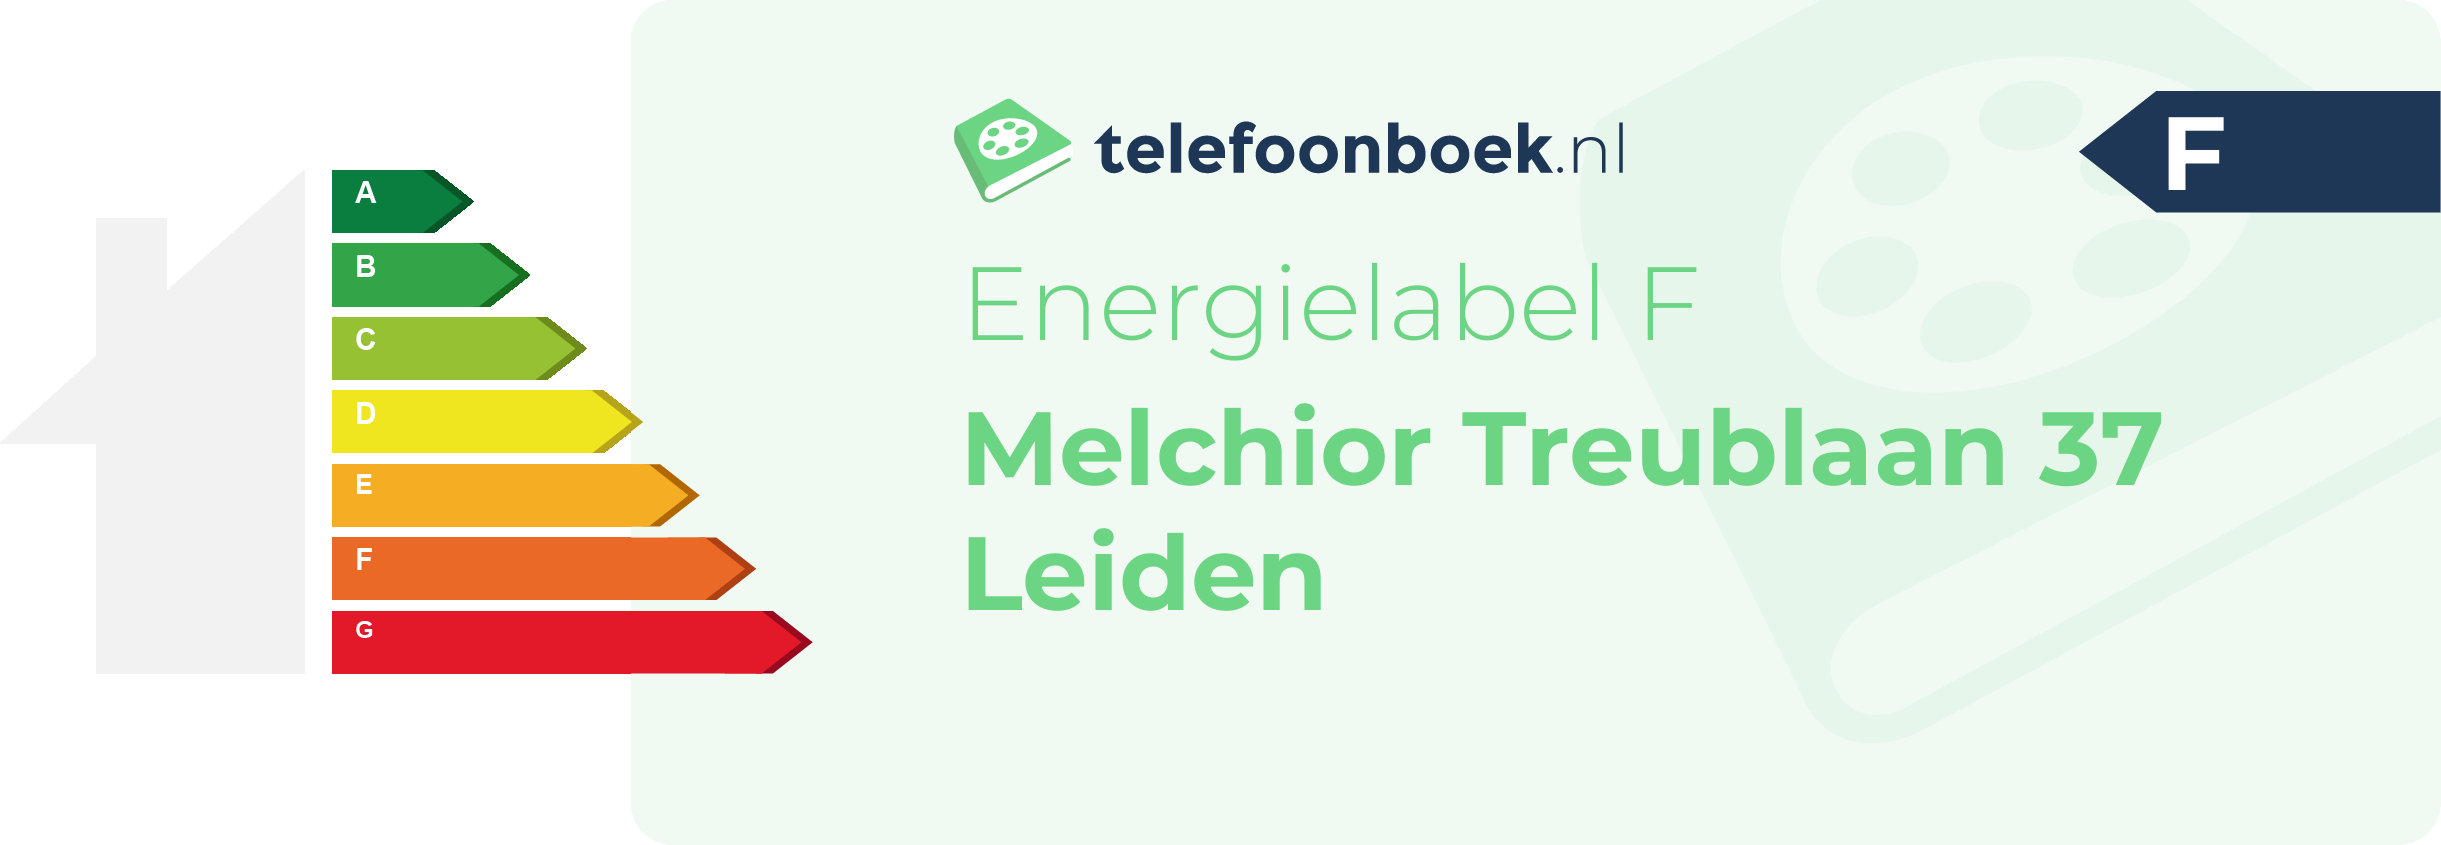 Energielabel Melchior Treublaan 37 Leiden